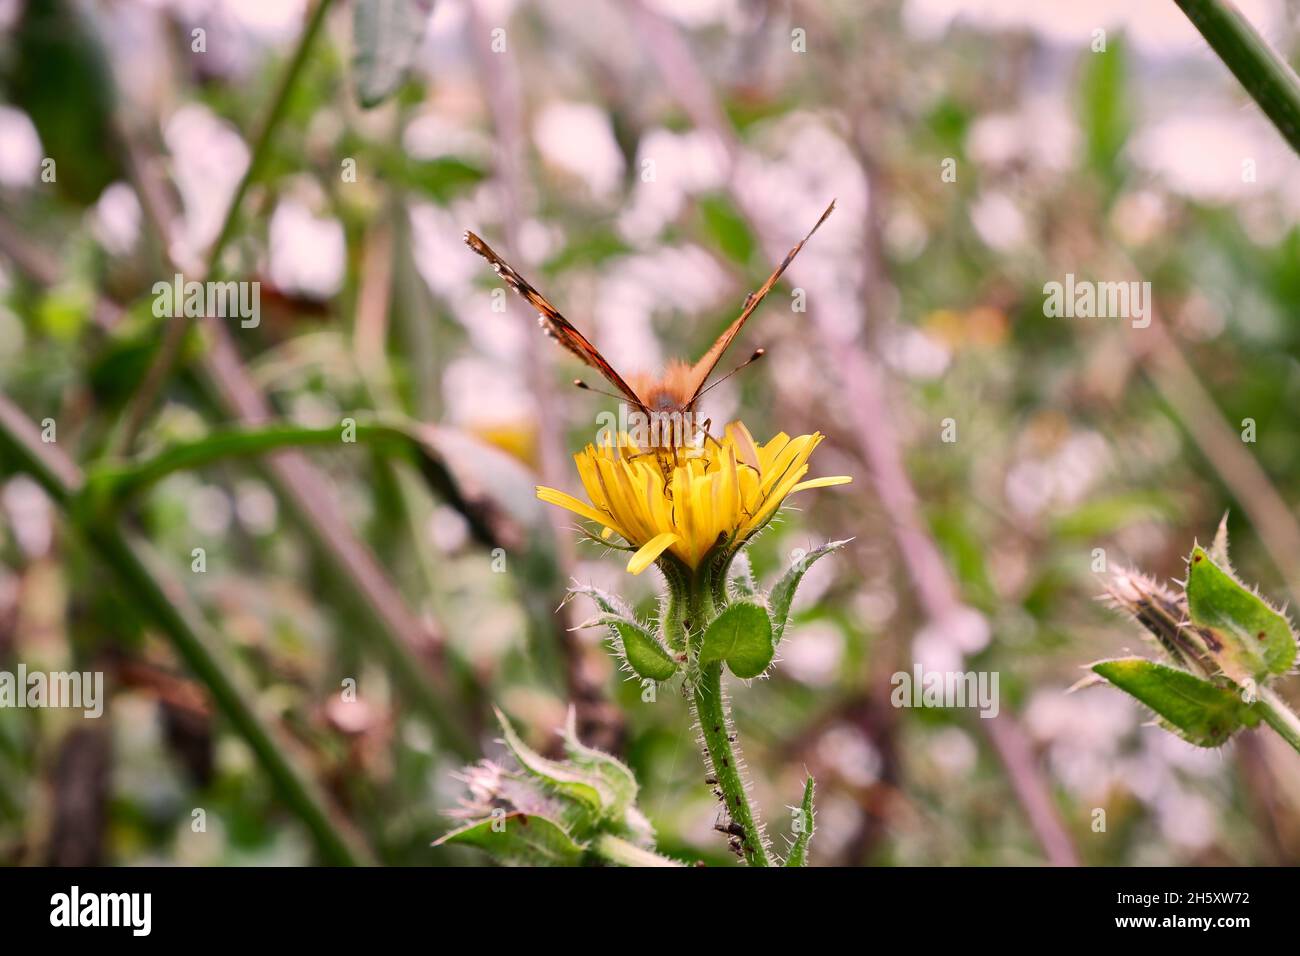 Selettivo di una farfalla su un fiore Foto Stock